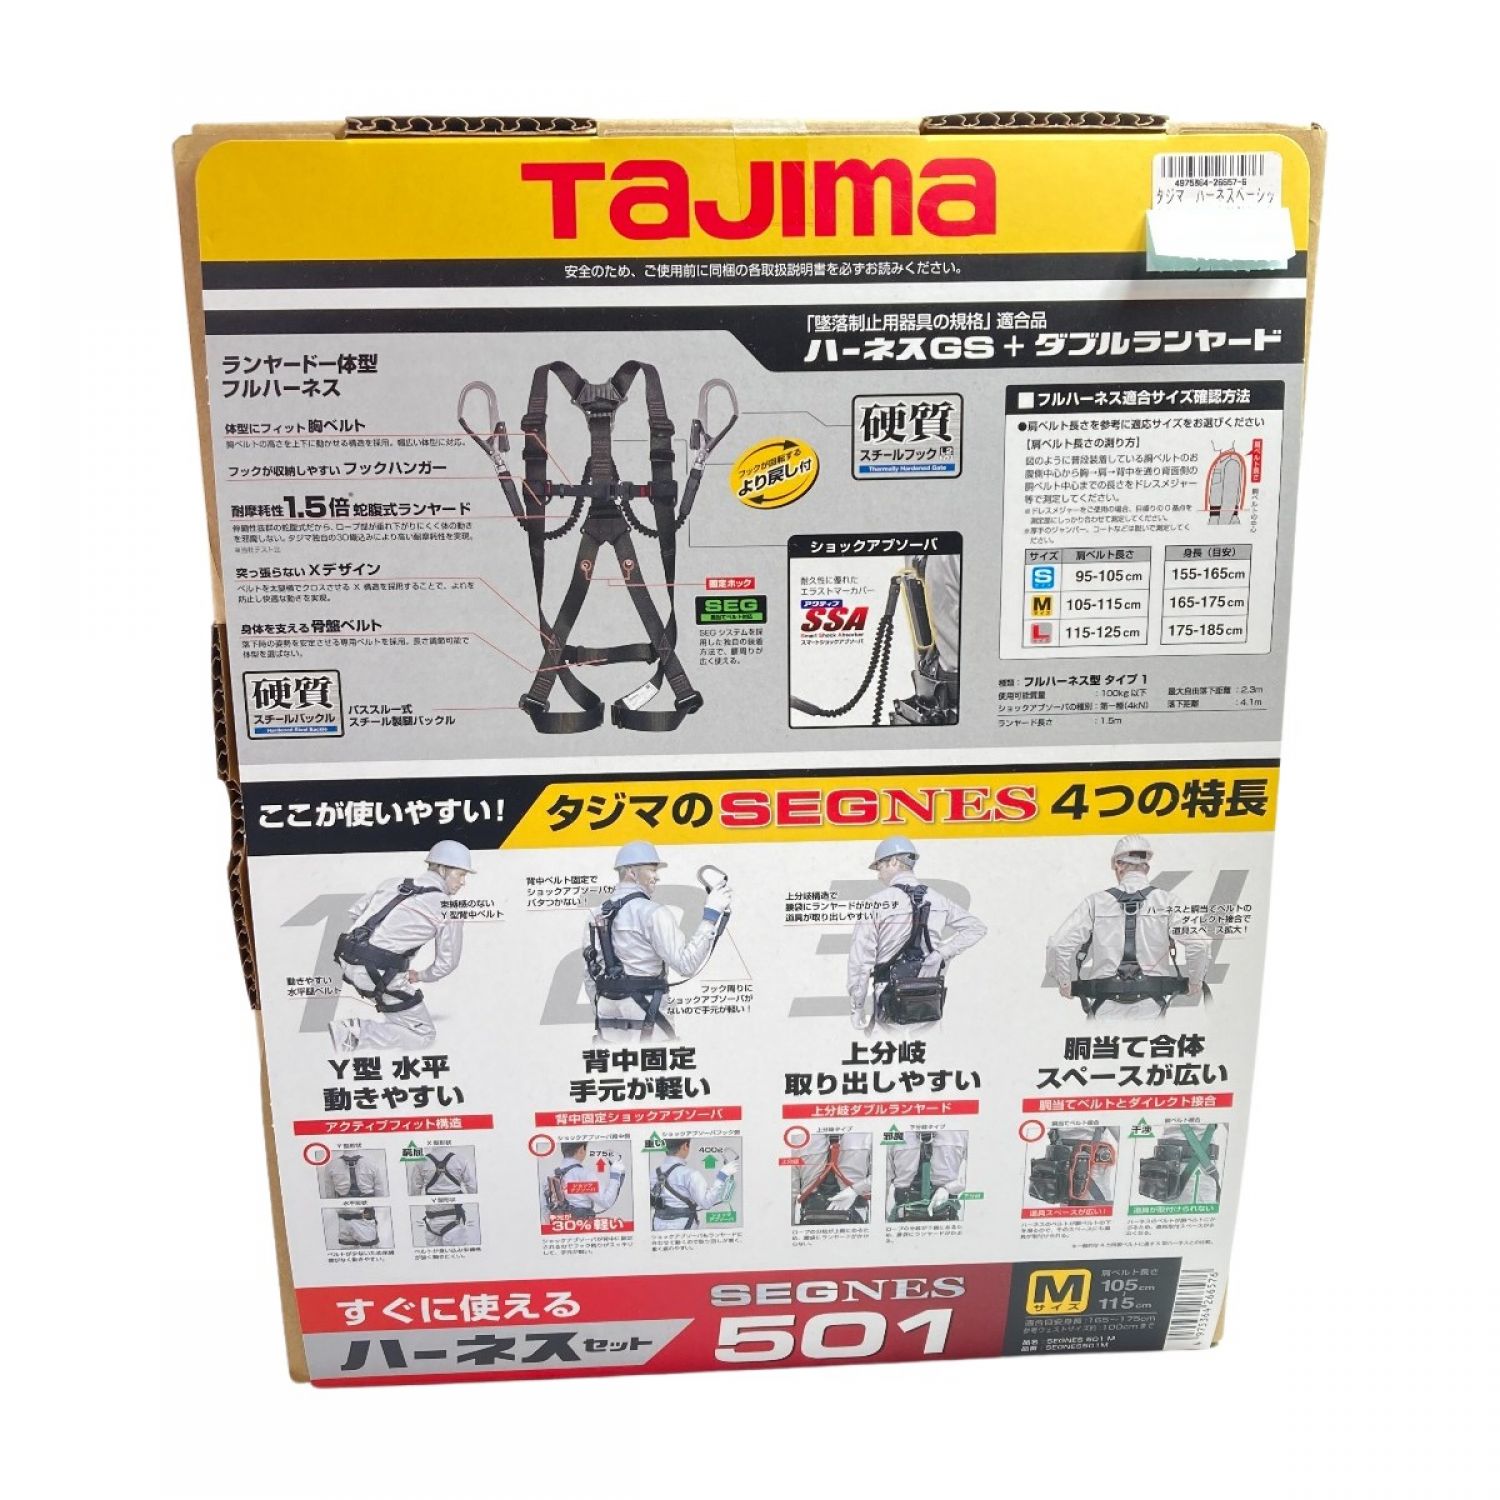 タジマ(Tajima) フルハーネス セット品 セグネス 702 Lサイズ 墜落制止用器具 - 4